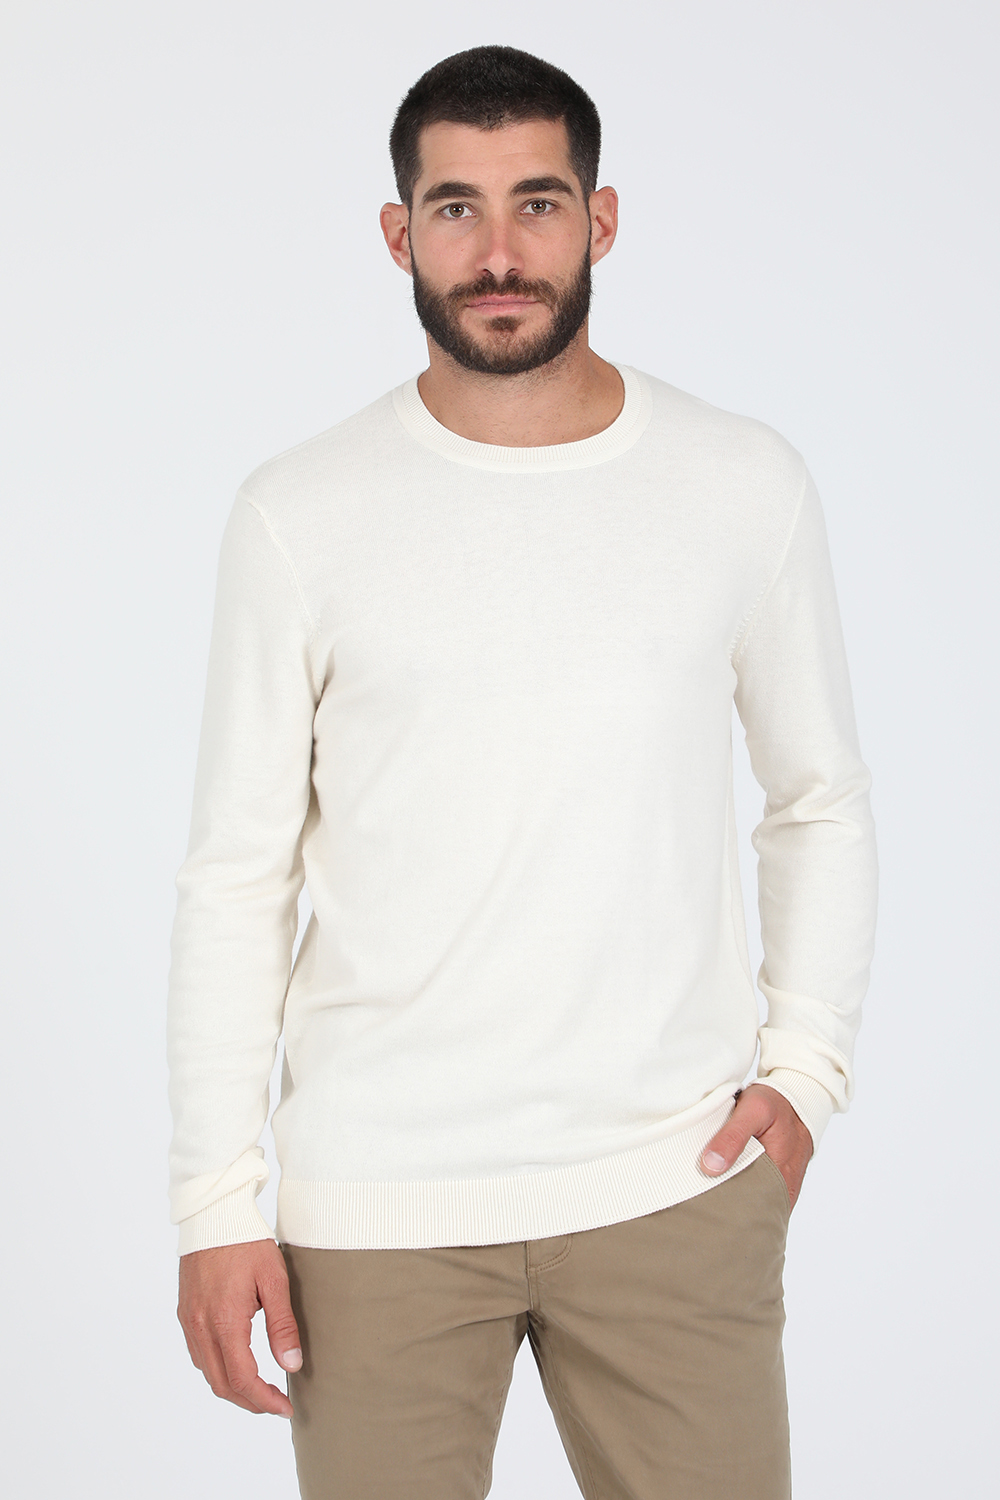 Ανδρικά/Ρούχα/Πλεκτά-Ζακέτες/Μπλούζες GAUDI - Ανδρική πλεκτή μπλούζα GAUDI λευκή